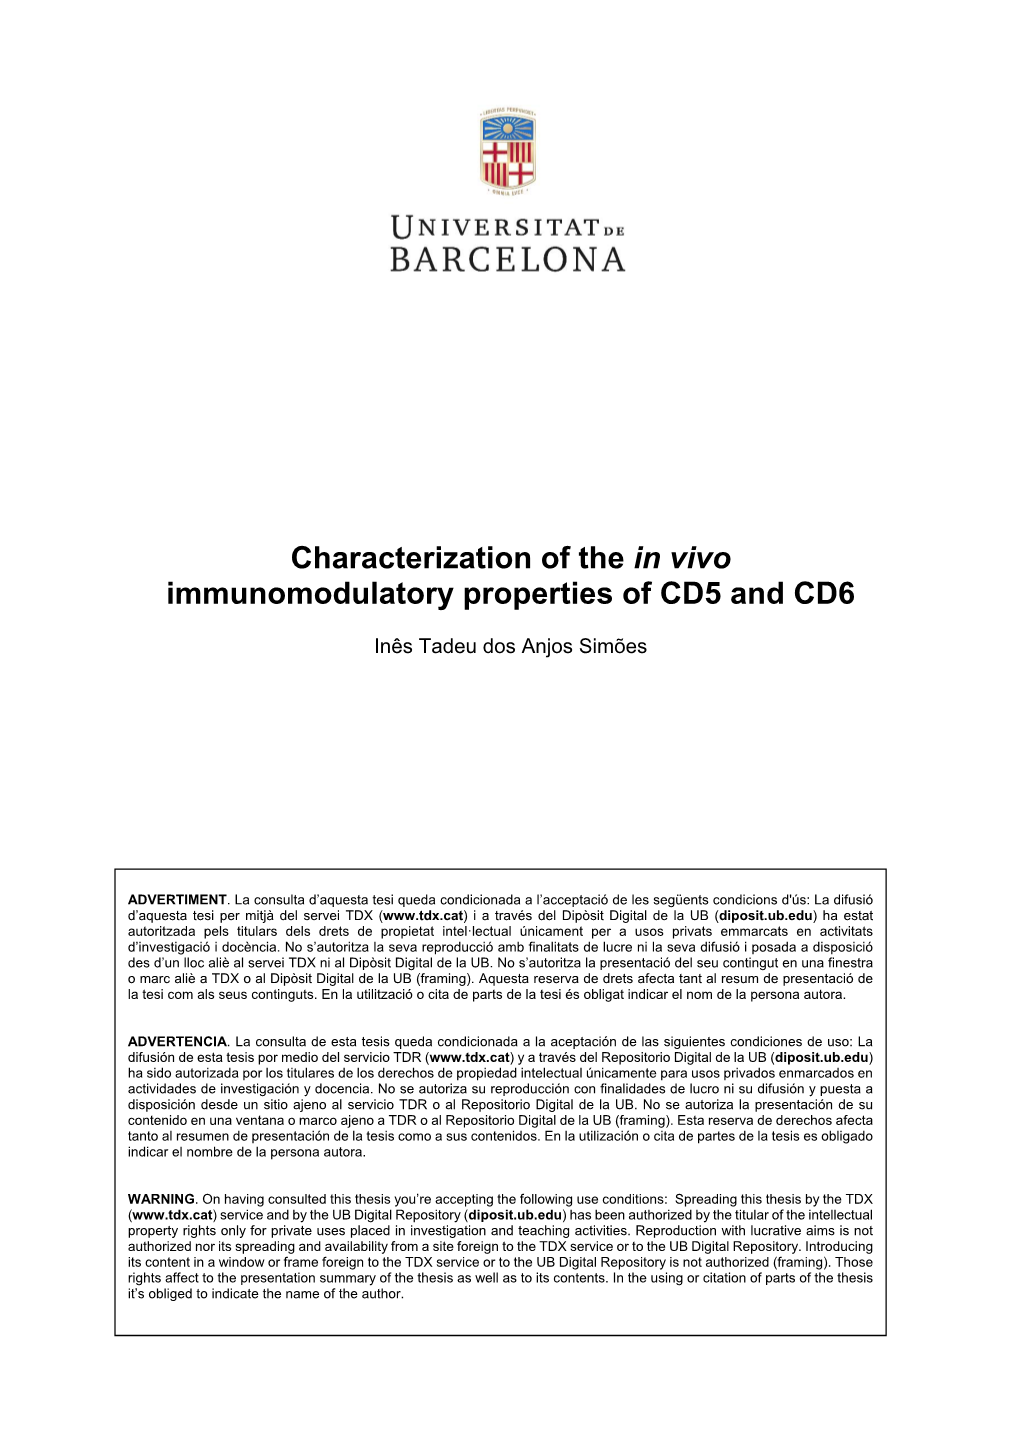 Characterization of the in Vivo Immunomodulatory Properties of CD5 and CD6